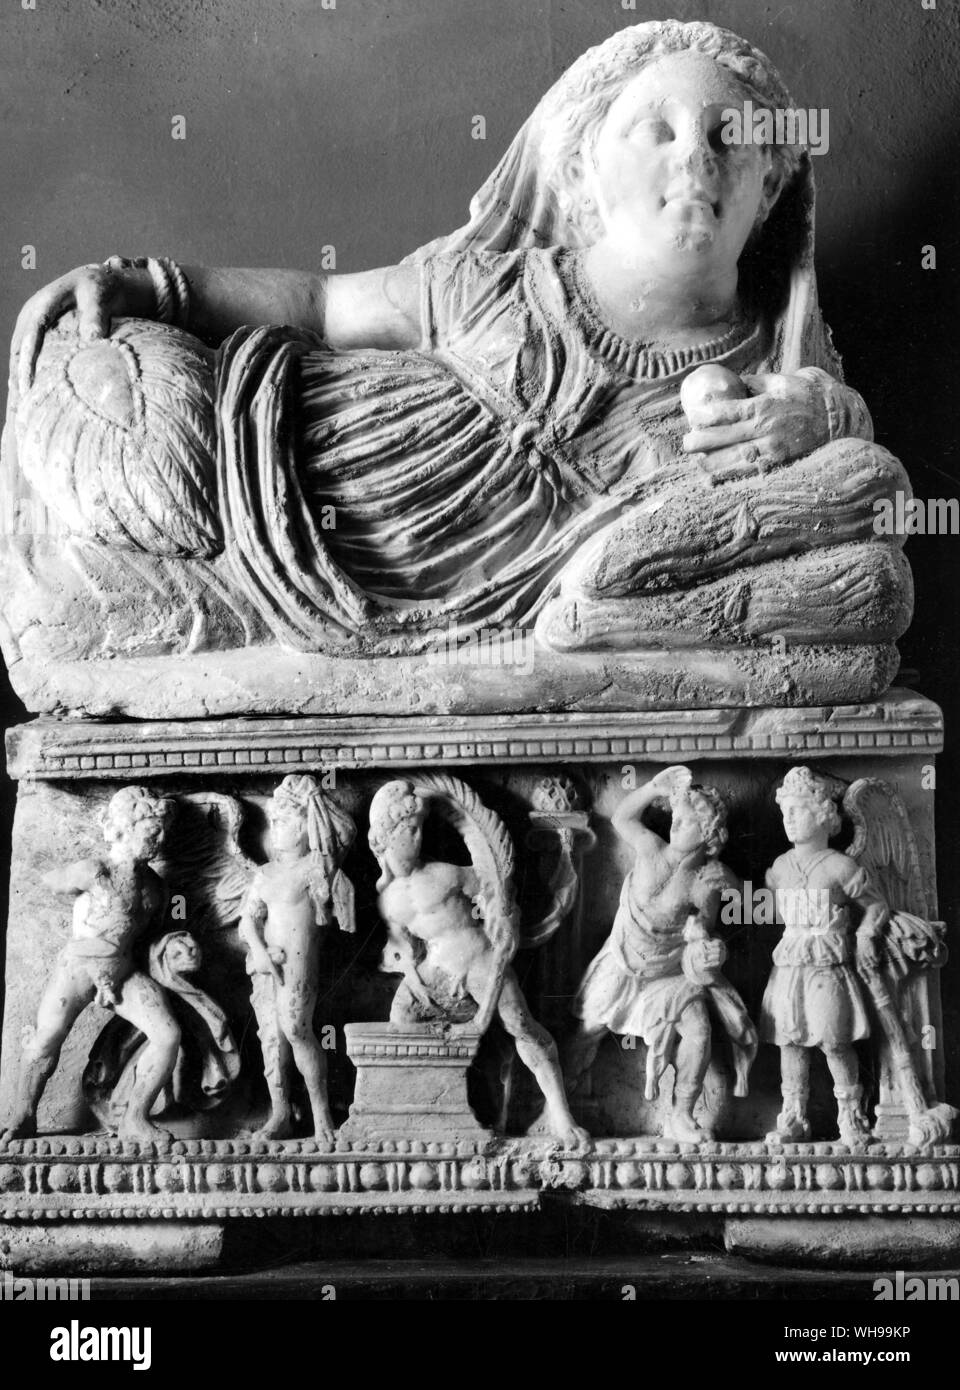 Una urna funeraria de alabastro de Volterra en la que la mujer tiene un pedazo de fruta en vez de por el habitual de libération dish Foto de stock